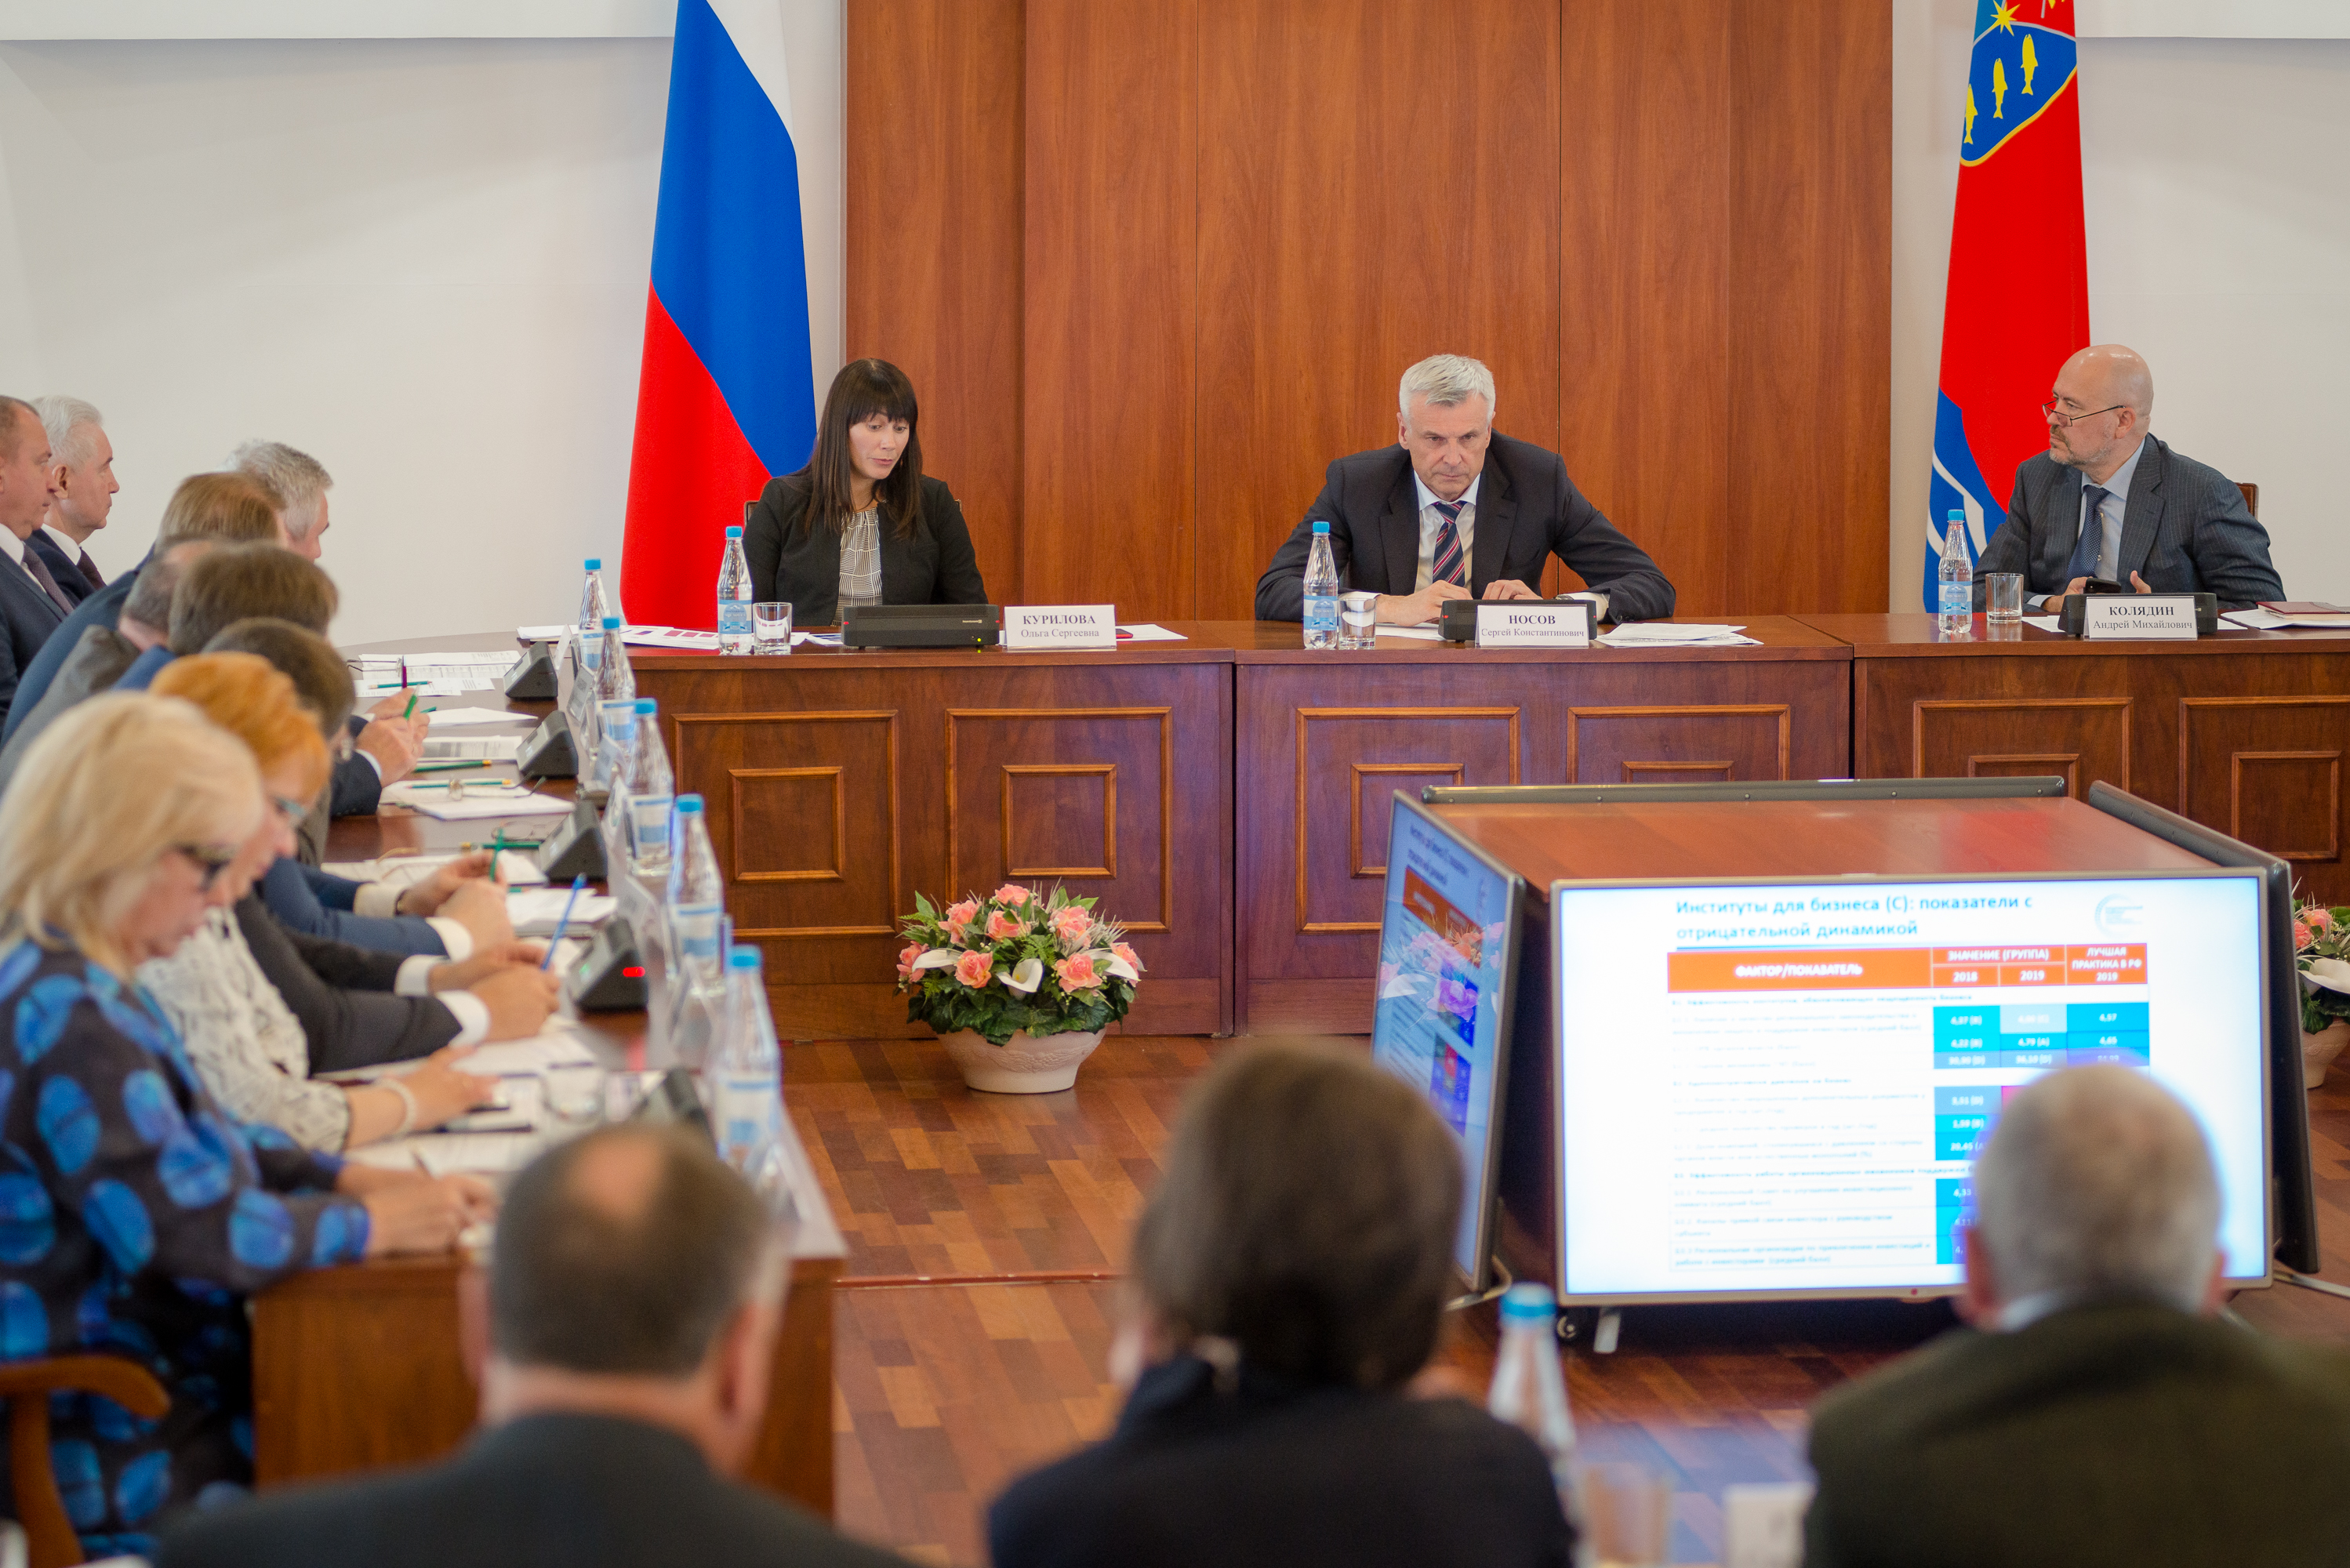 Губернатор Магаданской области Сергей Носов провел совещание по состоянию инвестиционного климата в регионе